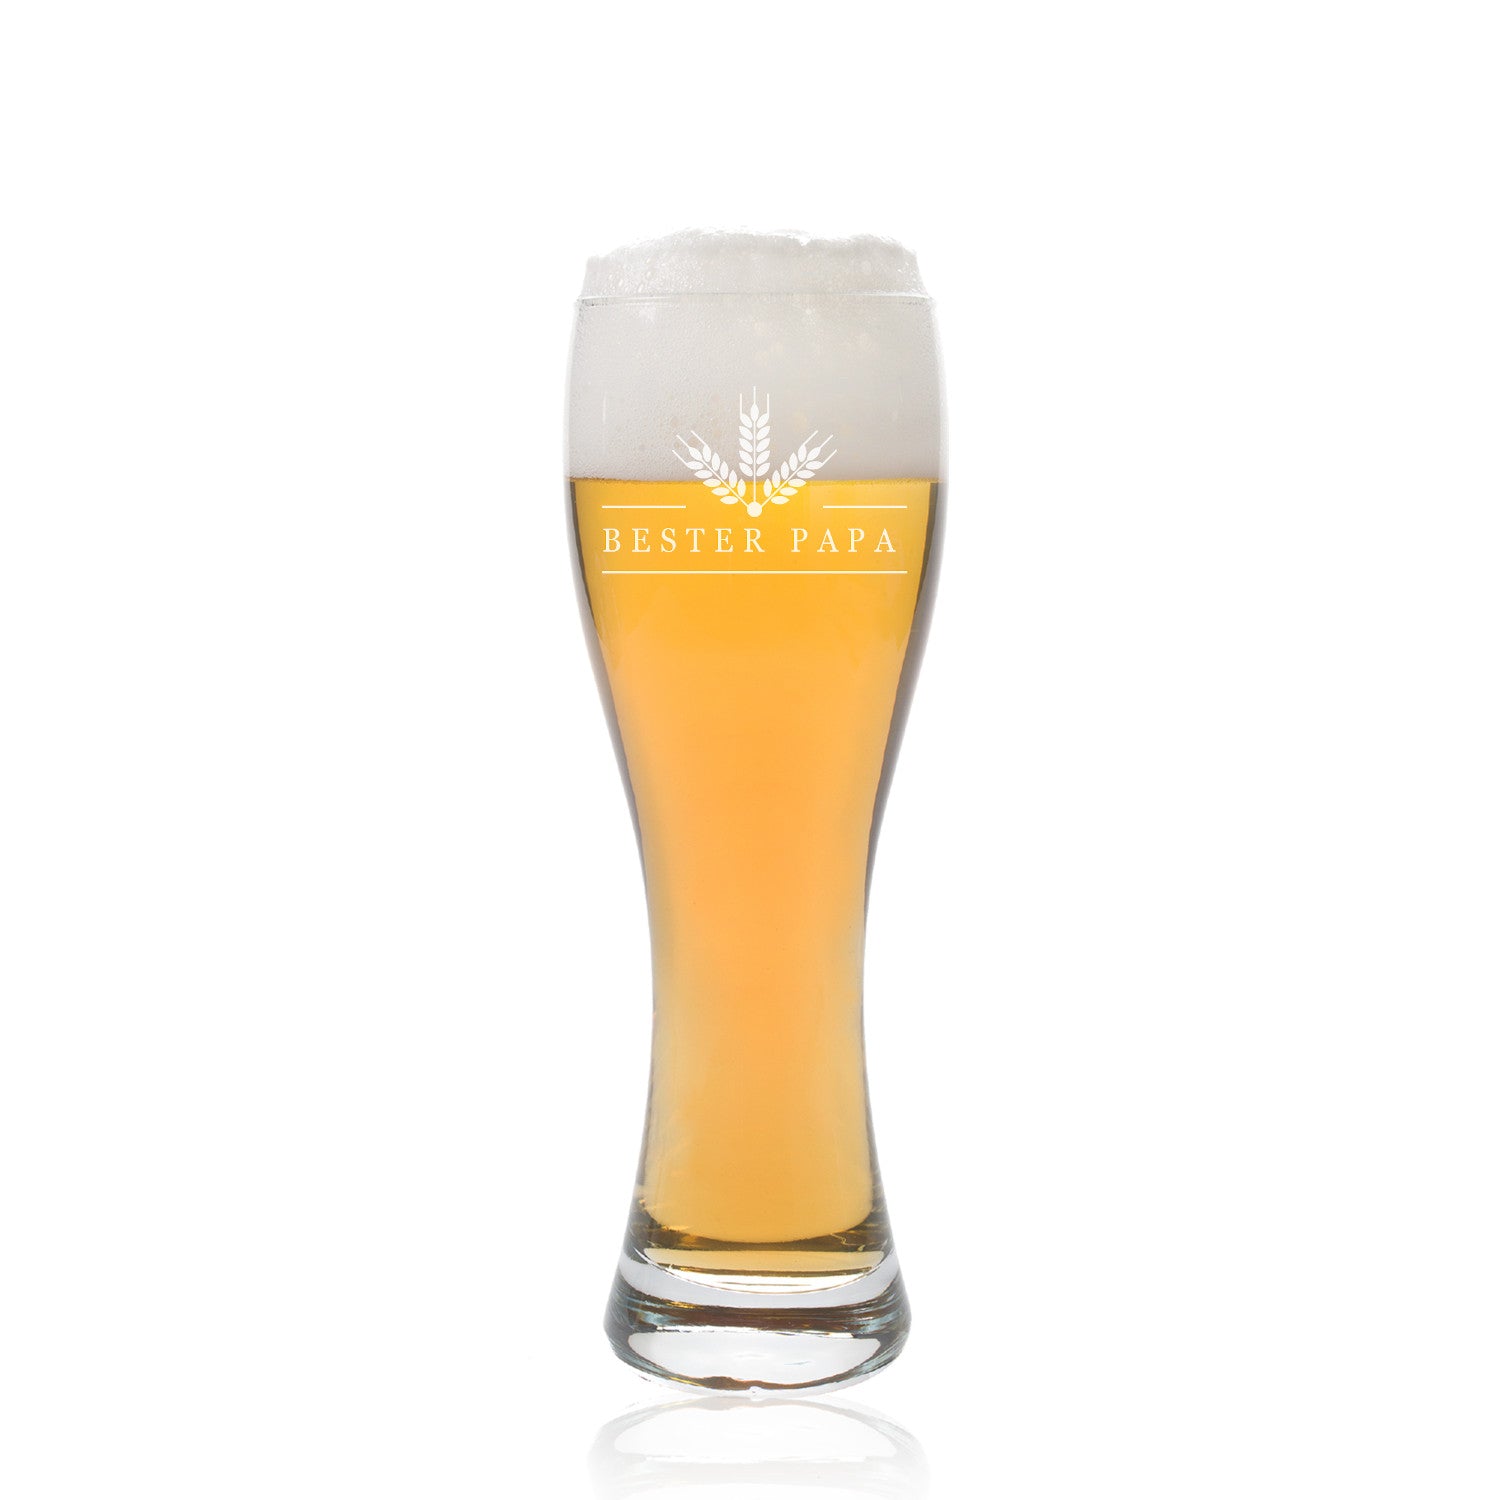 Premium Bierbox mit Leonardo Weizenglas Gravur Bester Papa und Weizenbierflasche